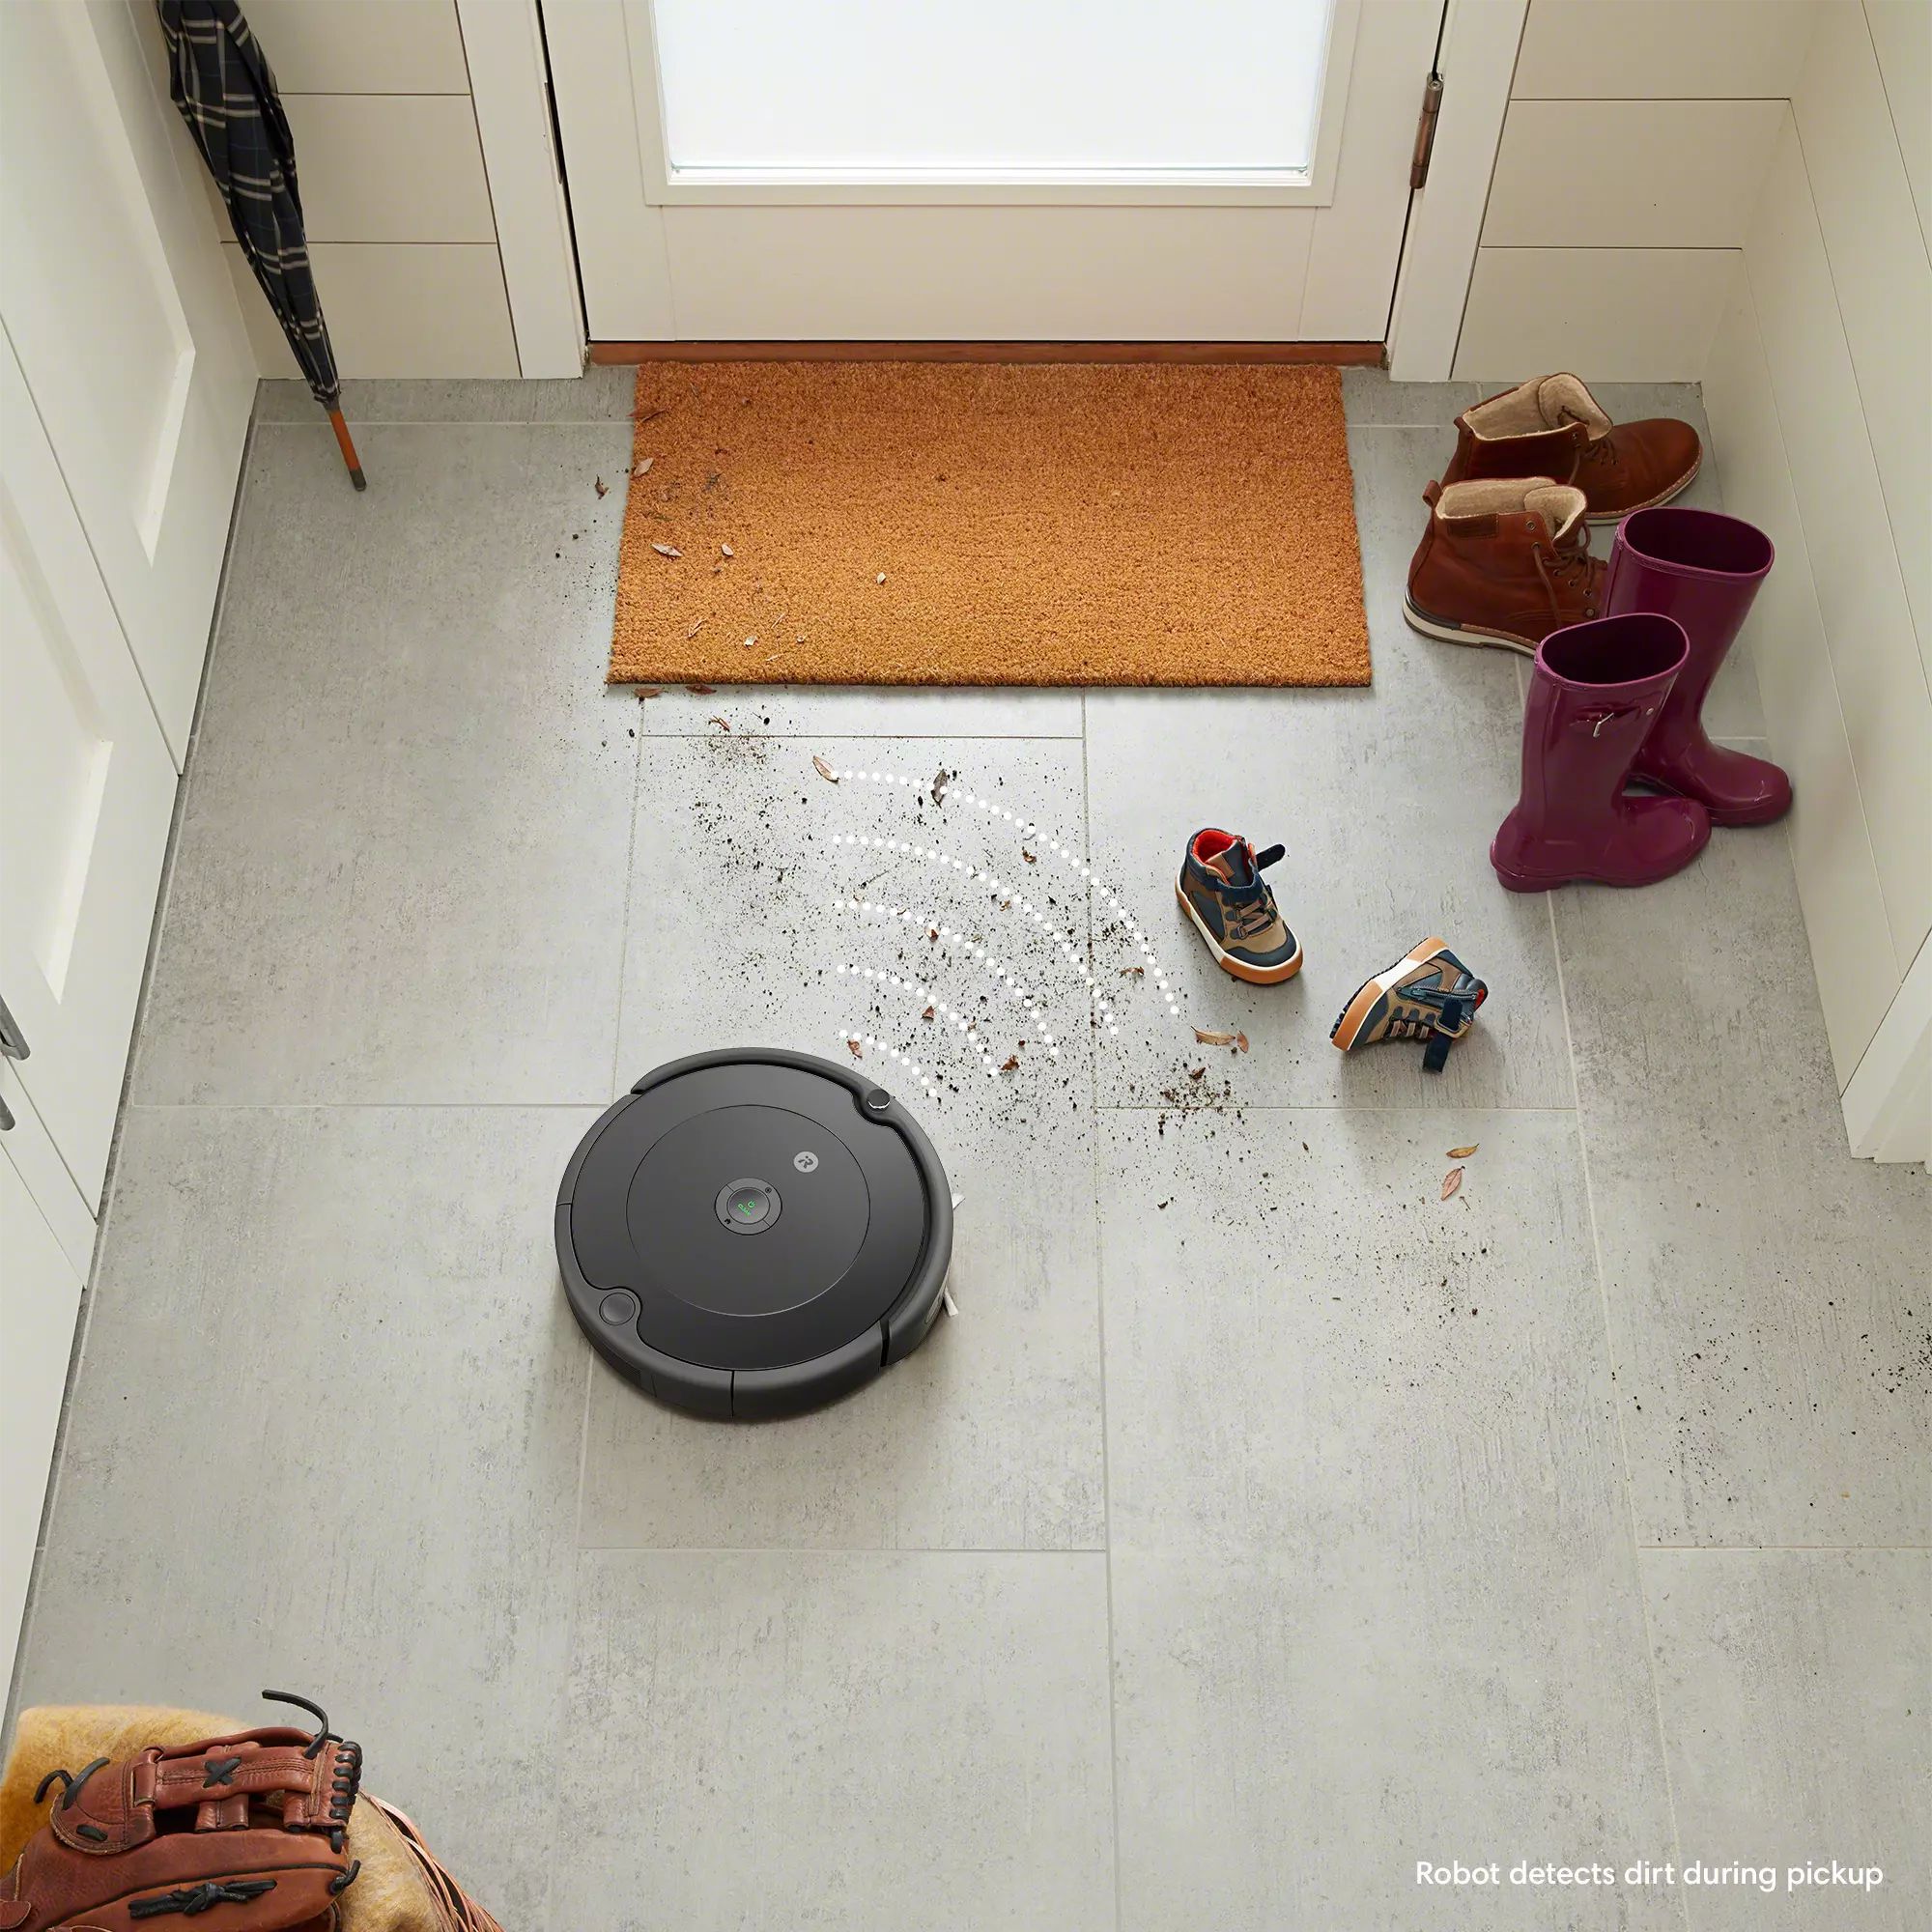 Roomba® 692 Robot Vacuum | iRobot | iRobot